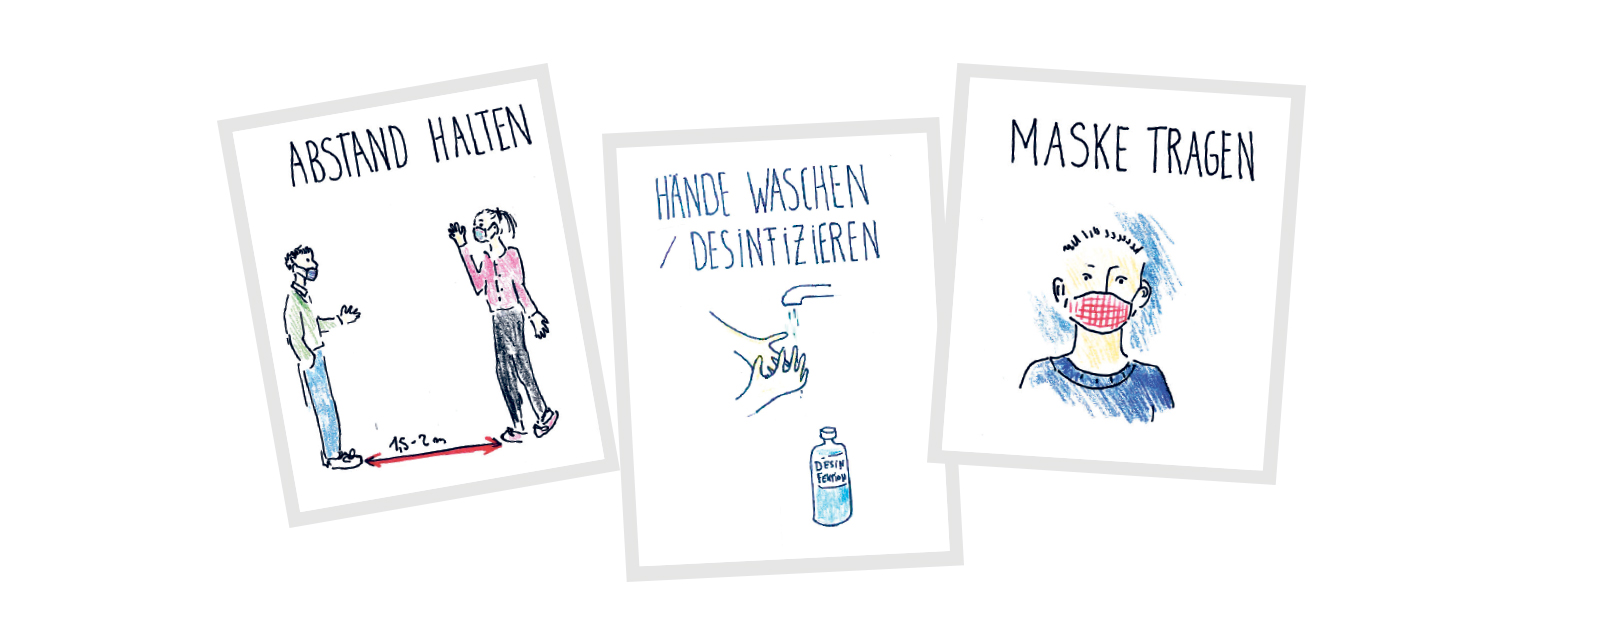 Handgemalte Zeichnungen von Mariana Steiner zur Erklärung der Hygieneregeln.